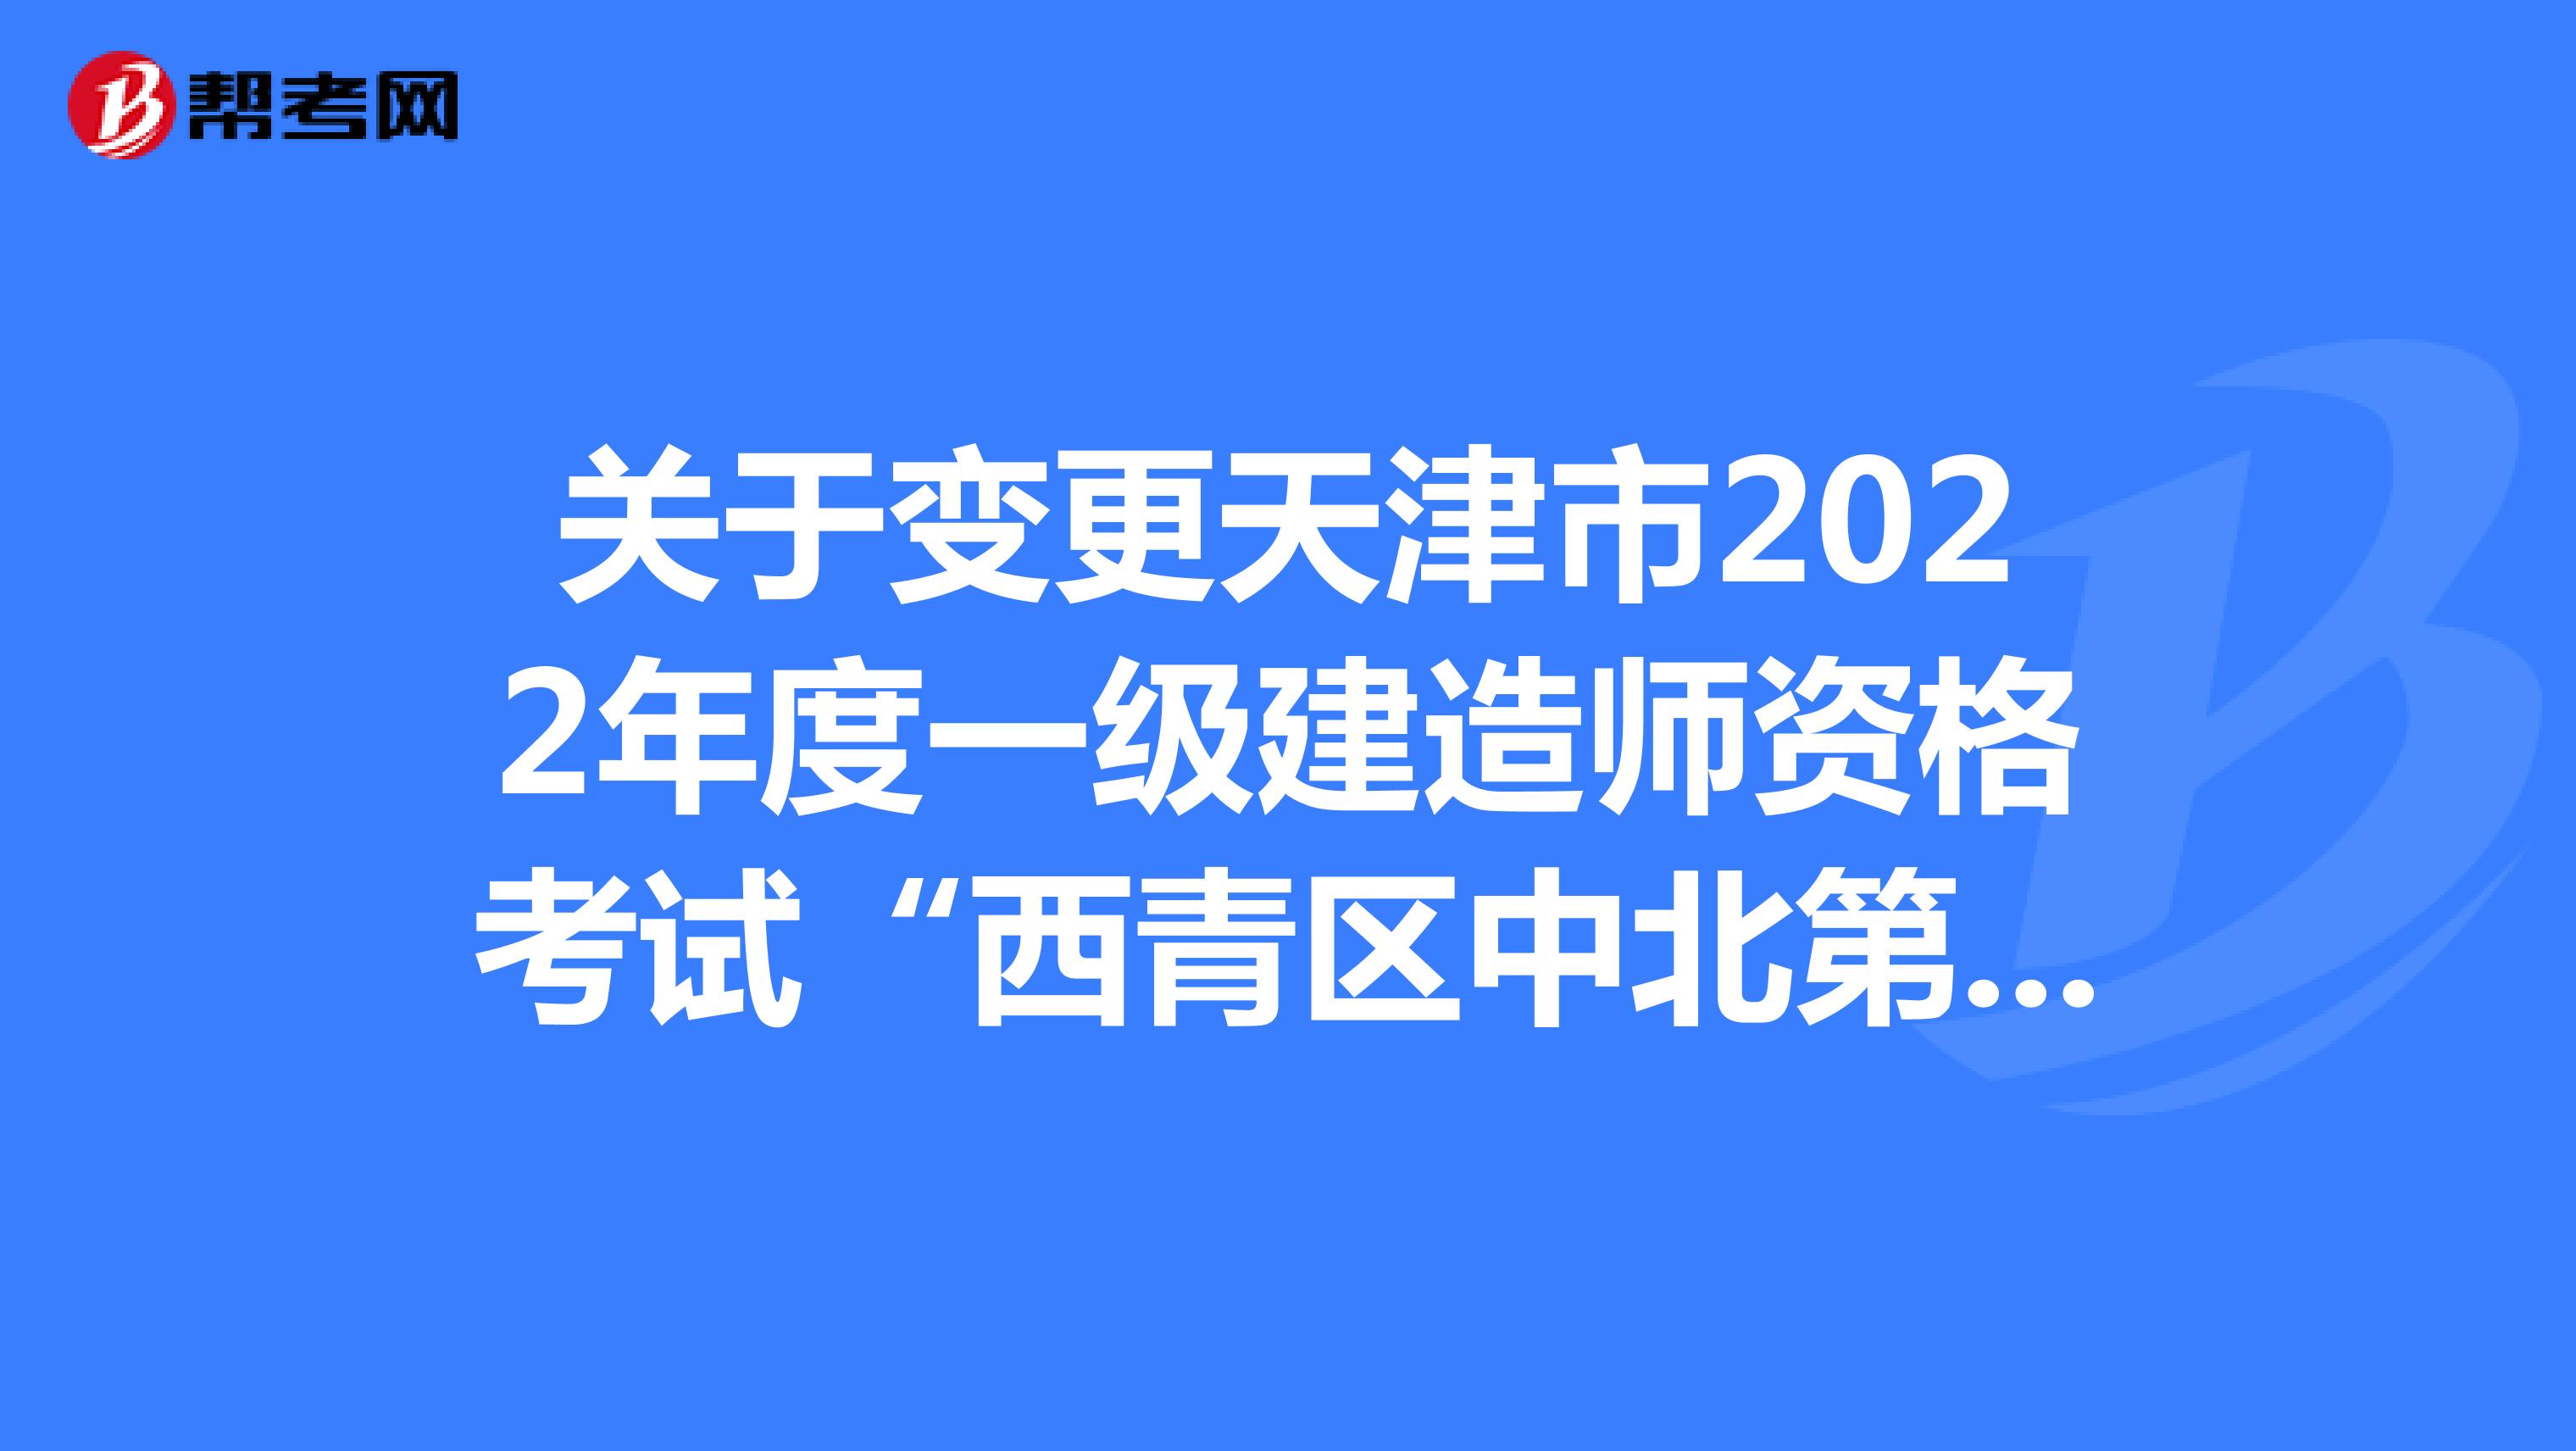 关于变更天津市2022年度一级建造师资格考试“西青区中北第二小学”考点的通知​